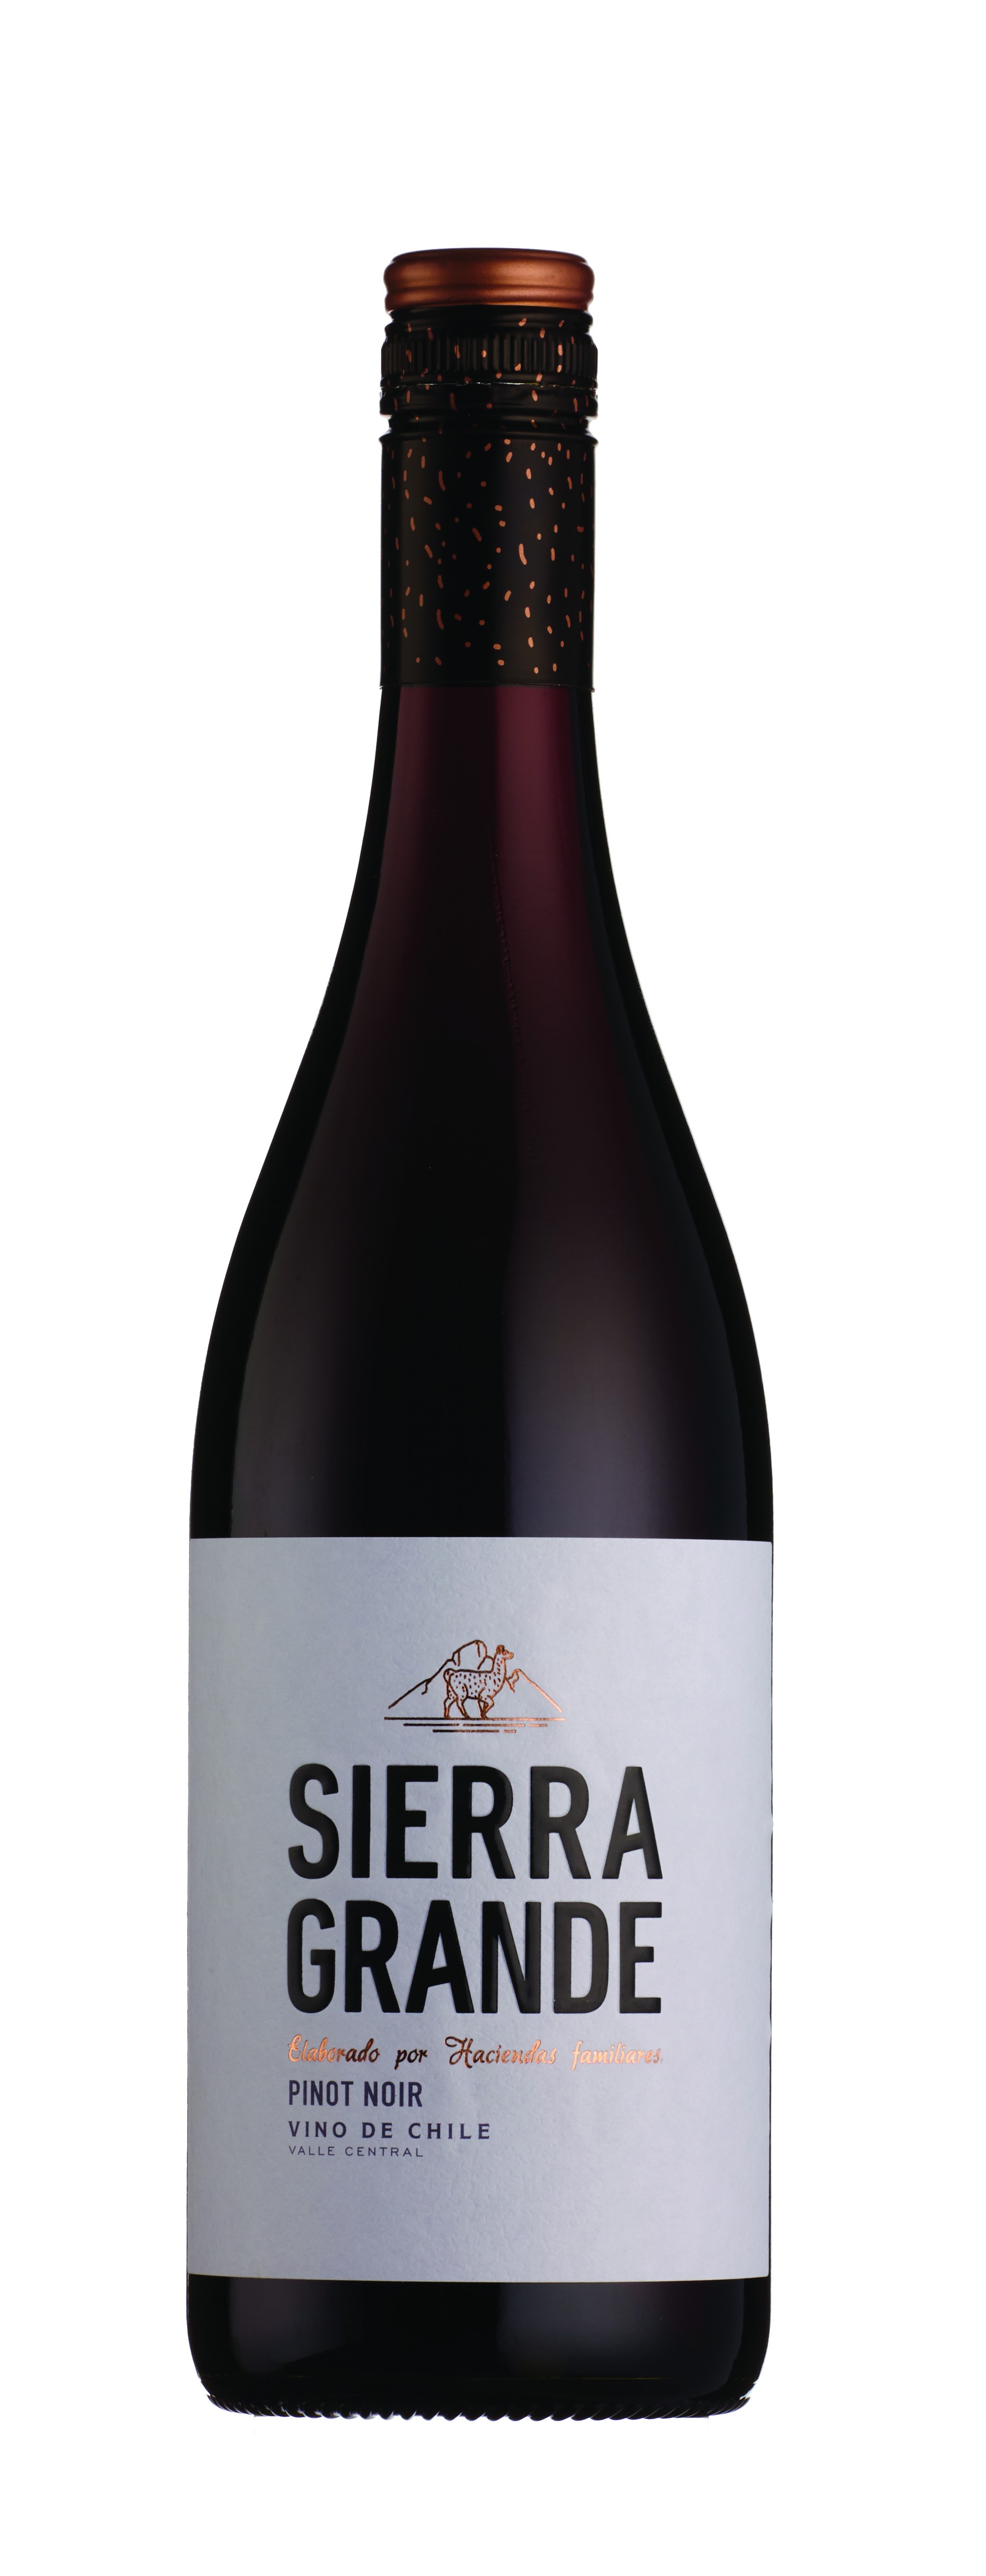 Buy Sierra Grande Pinot Noir at herculeswines.co.uk